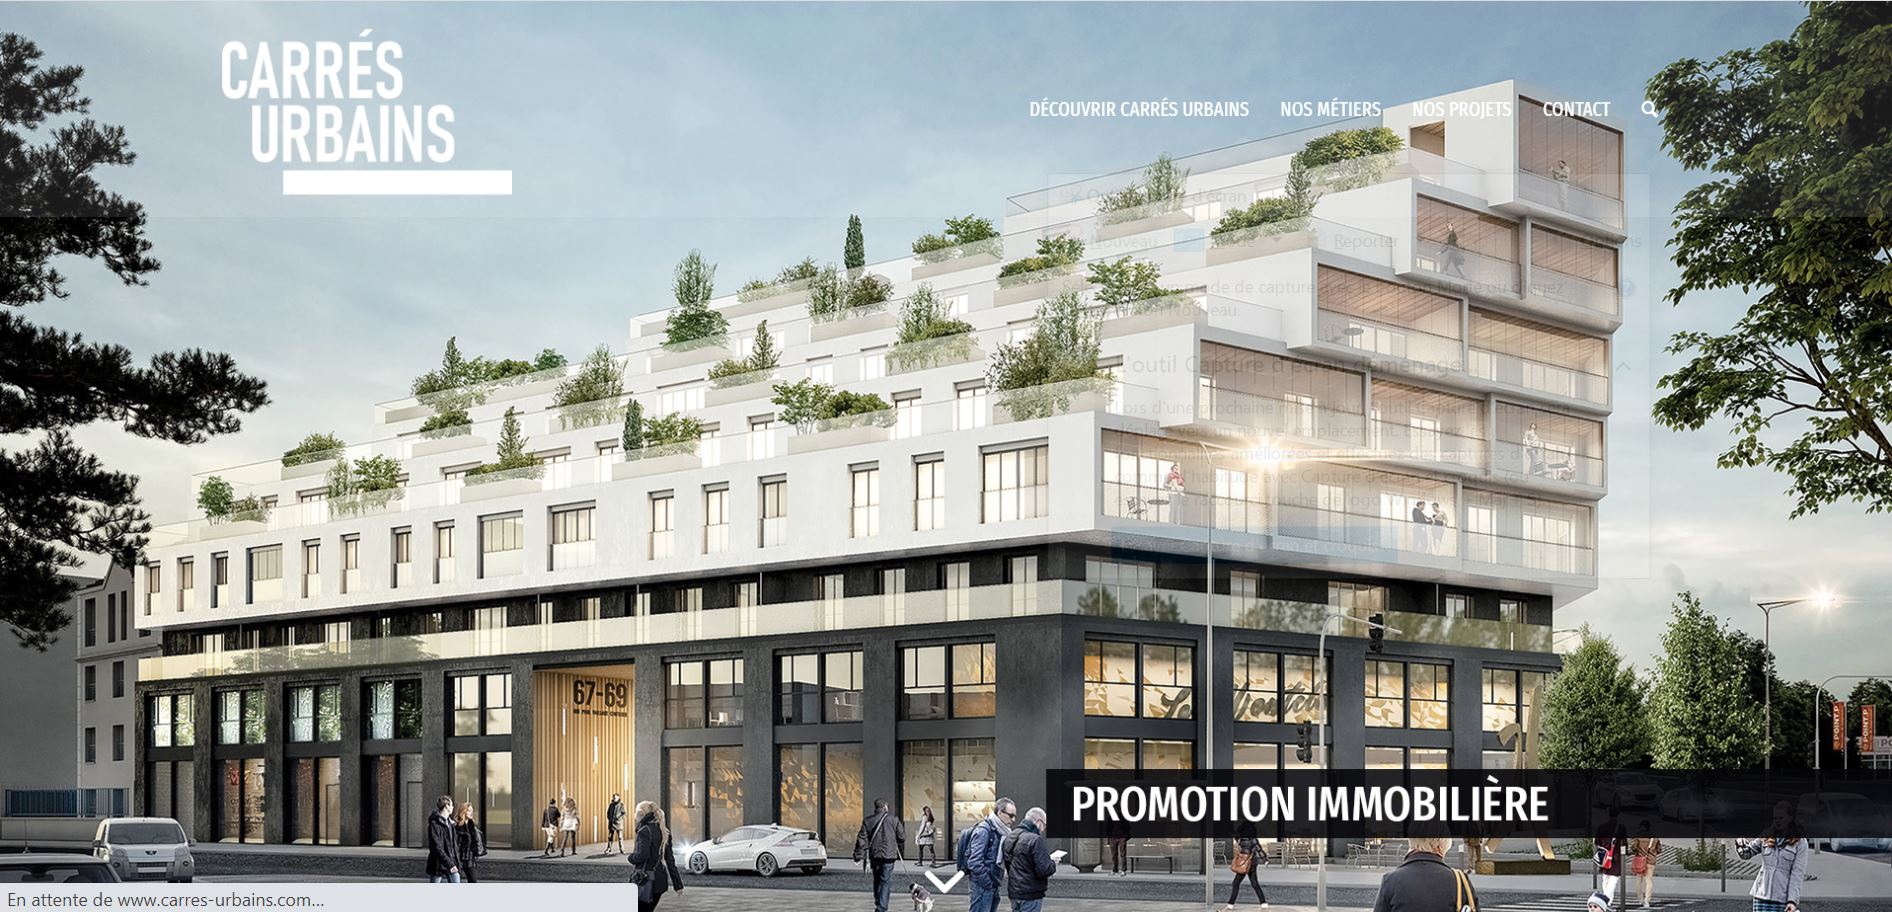 Création de site web - Carrés Urbains - Promoteur immobilier - Paris / Lyon